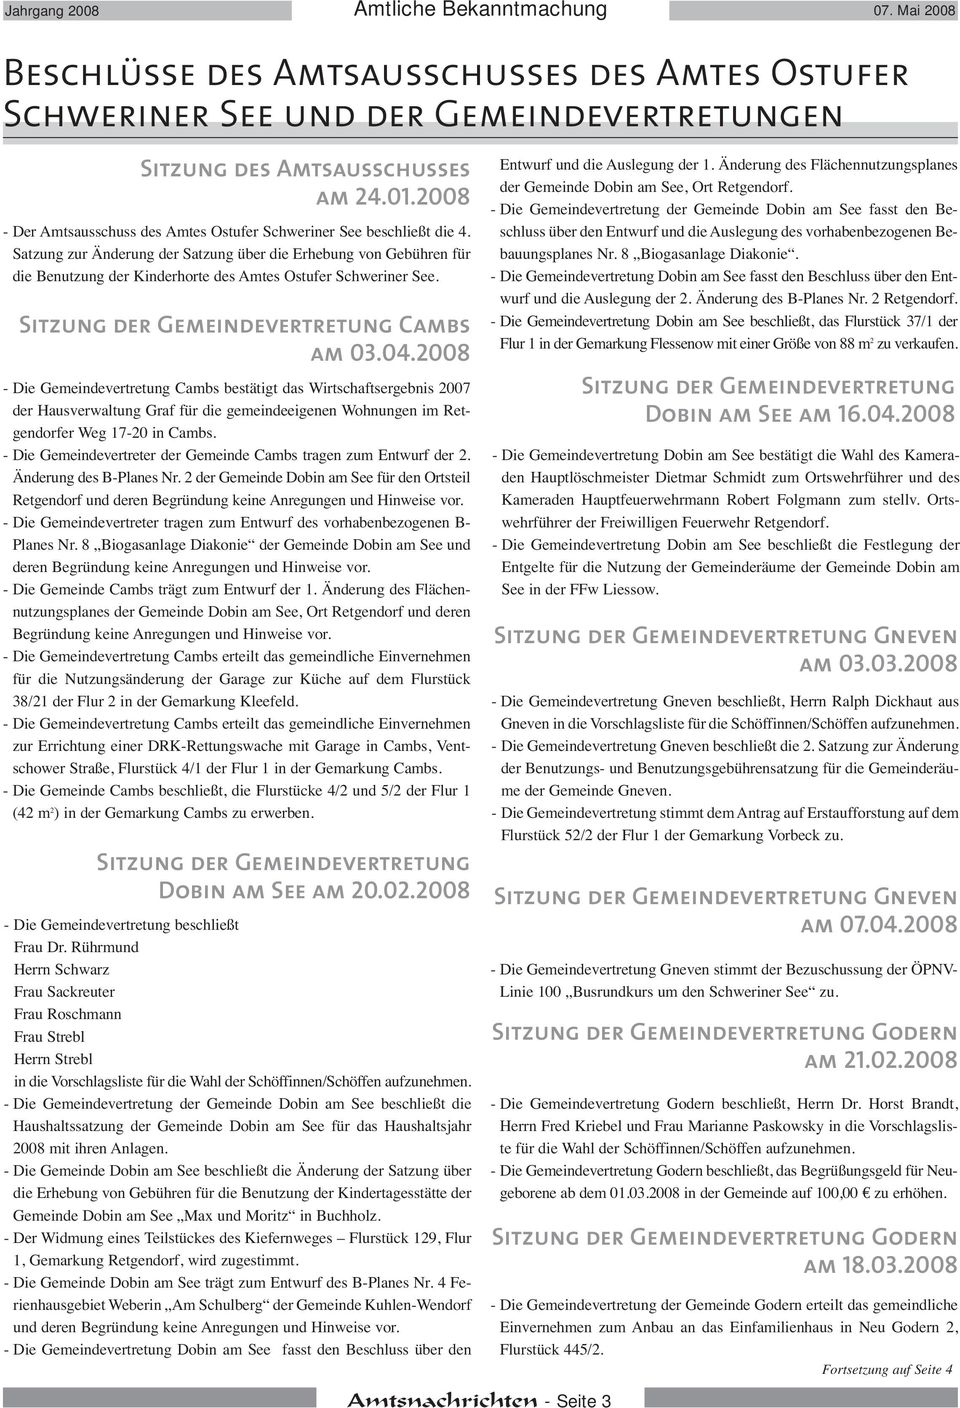 Satzung zur Änderung der Satzung über die Erhebung von Gebühren für die Benutzung der Kinderhorte des Amtes Ostufer Schweriner See. Cambs am 03.04.